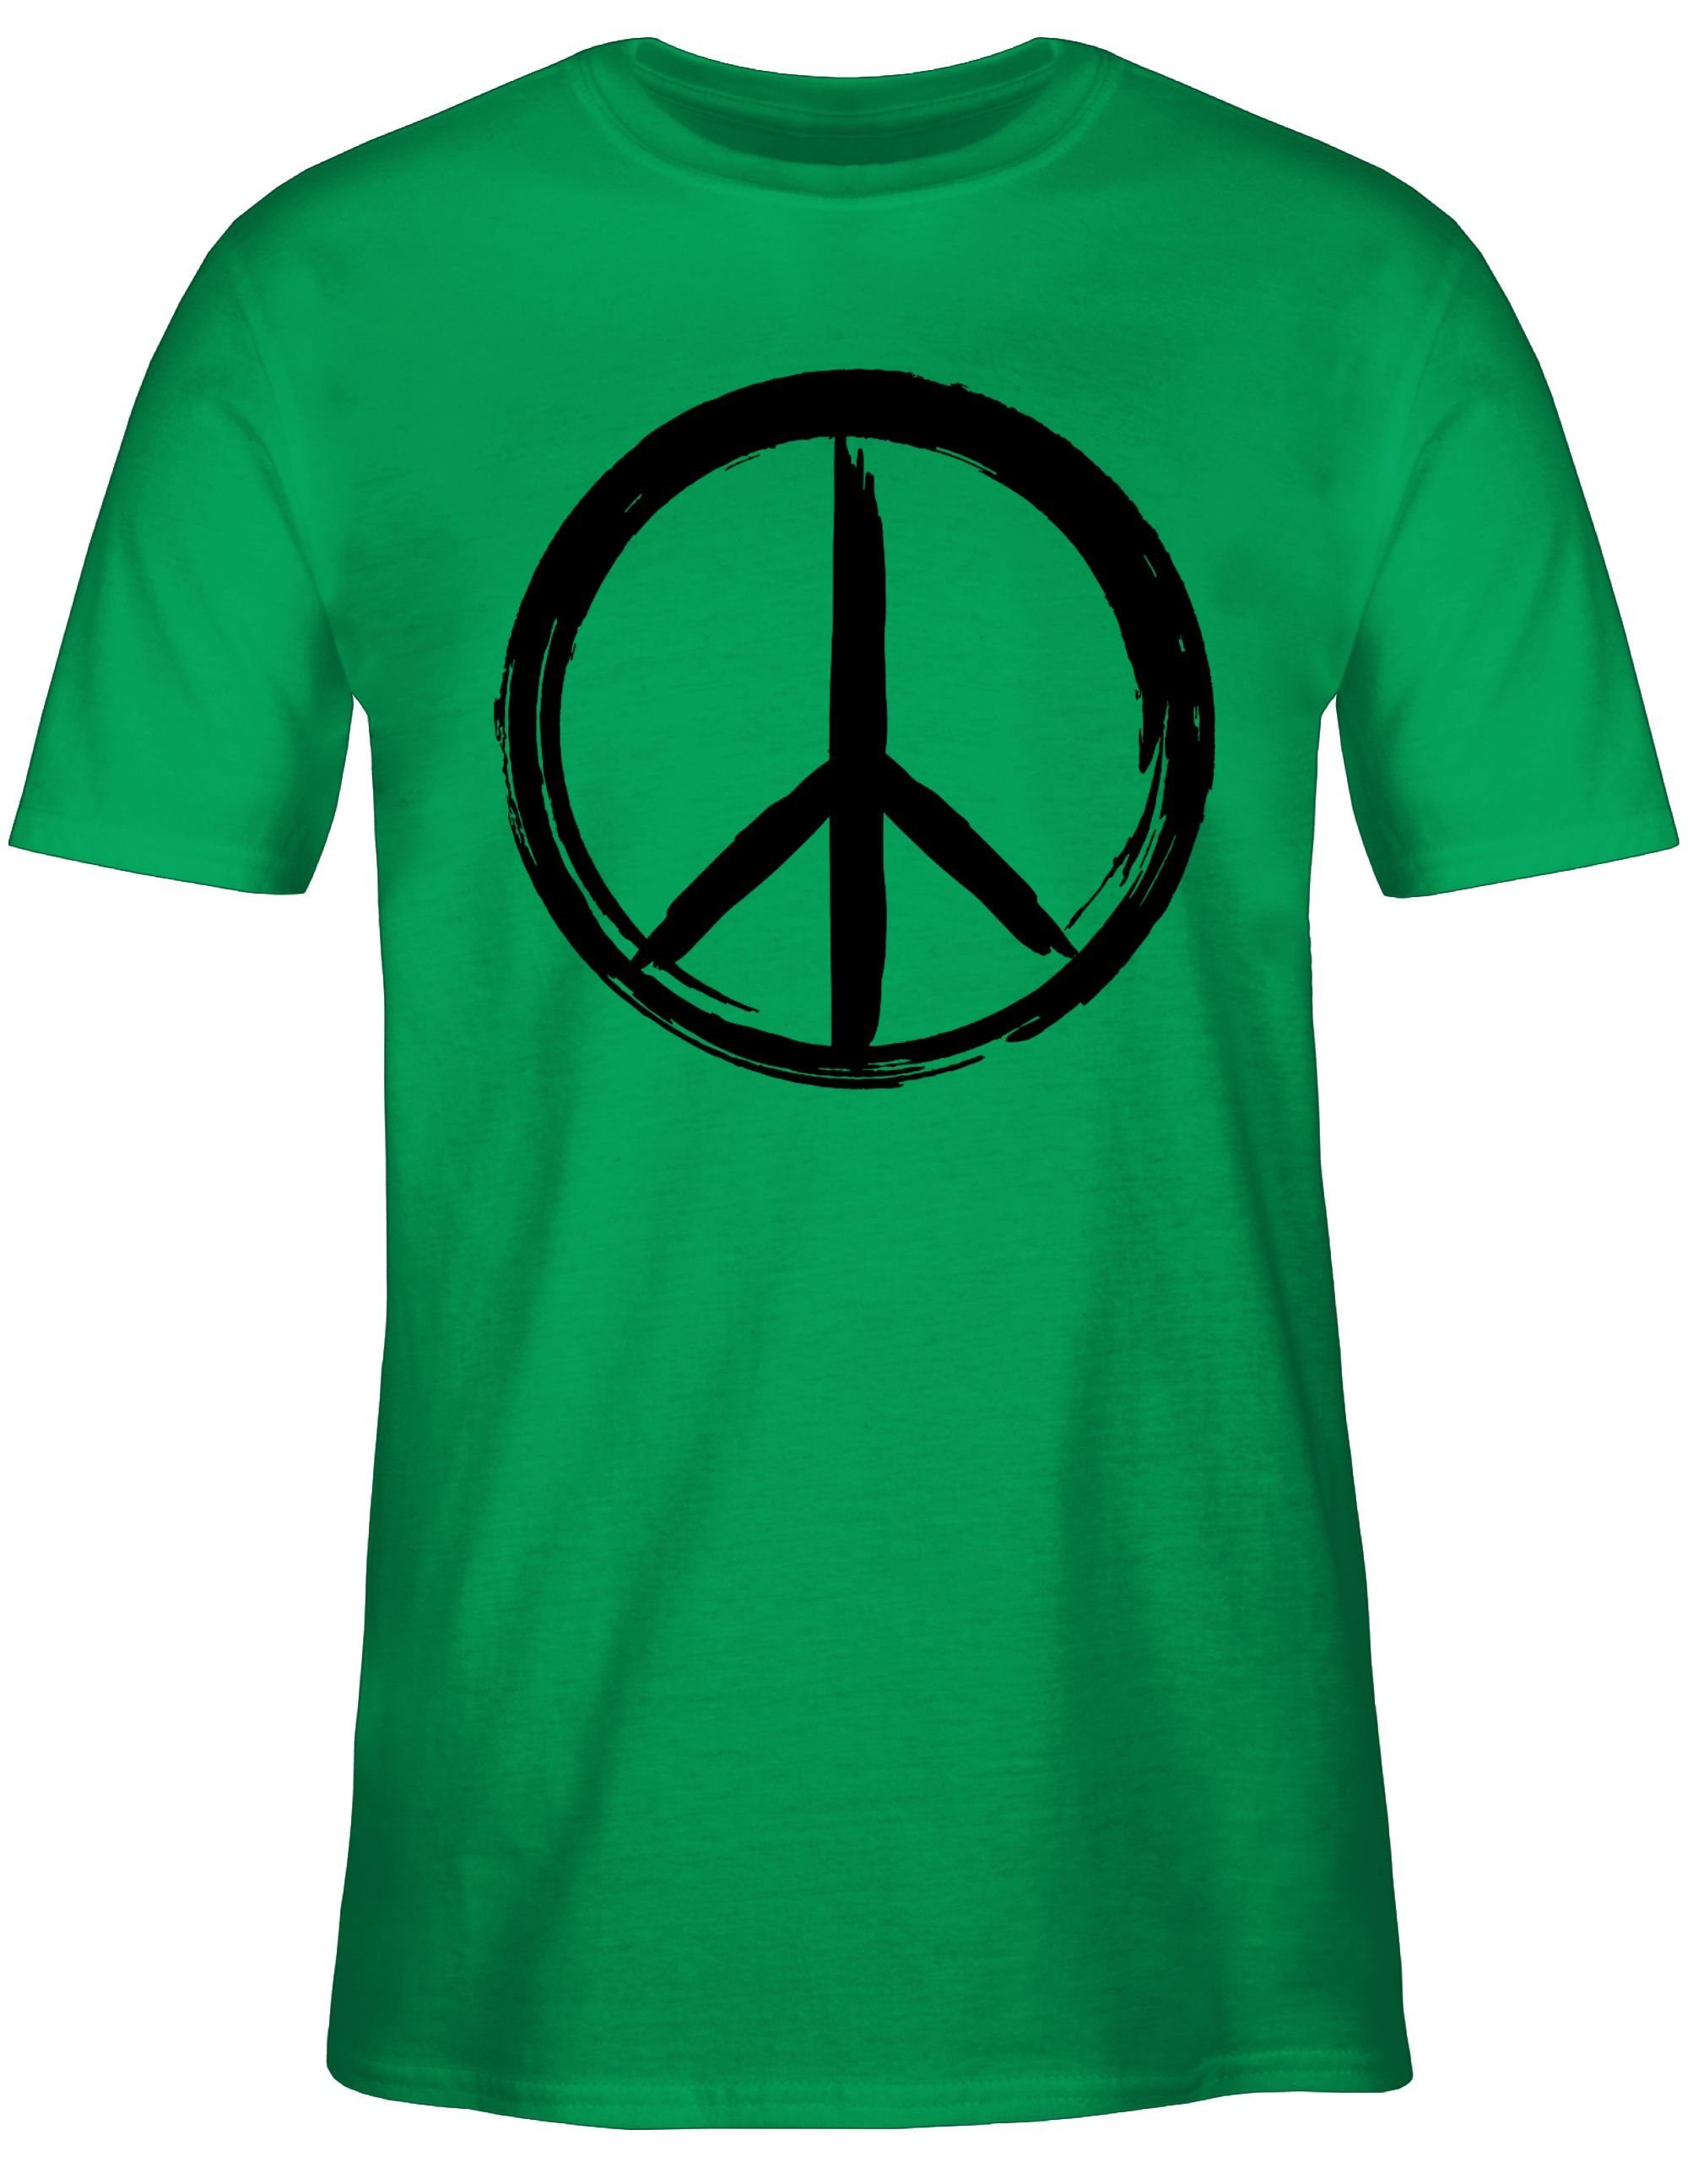 3 T-Shirt Peace schwarz Optik Shirtracer Zeichen Pinsel Grün Statement - Sprüche